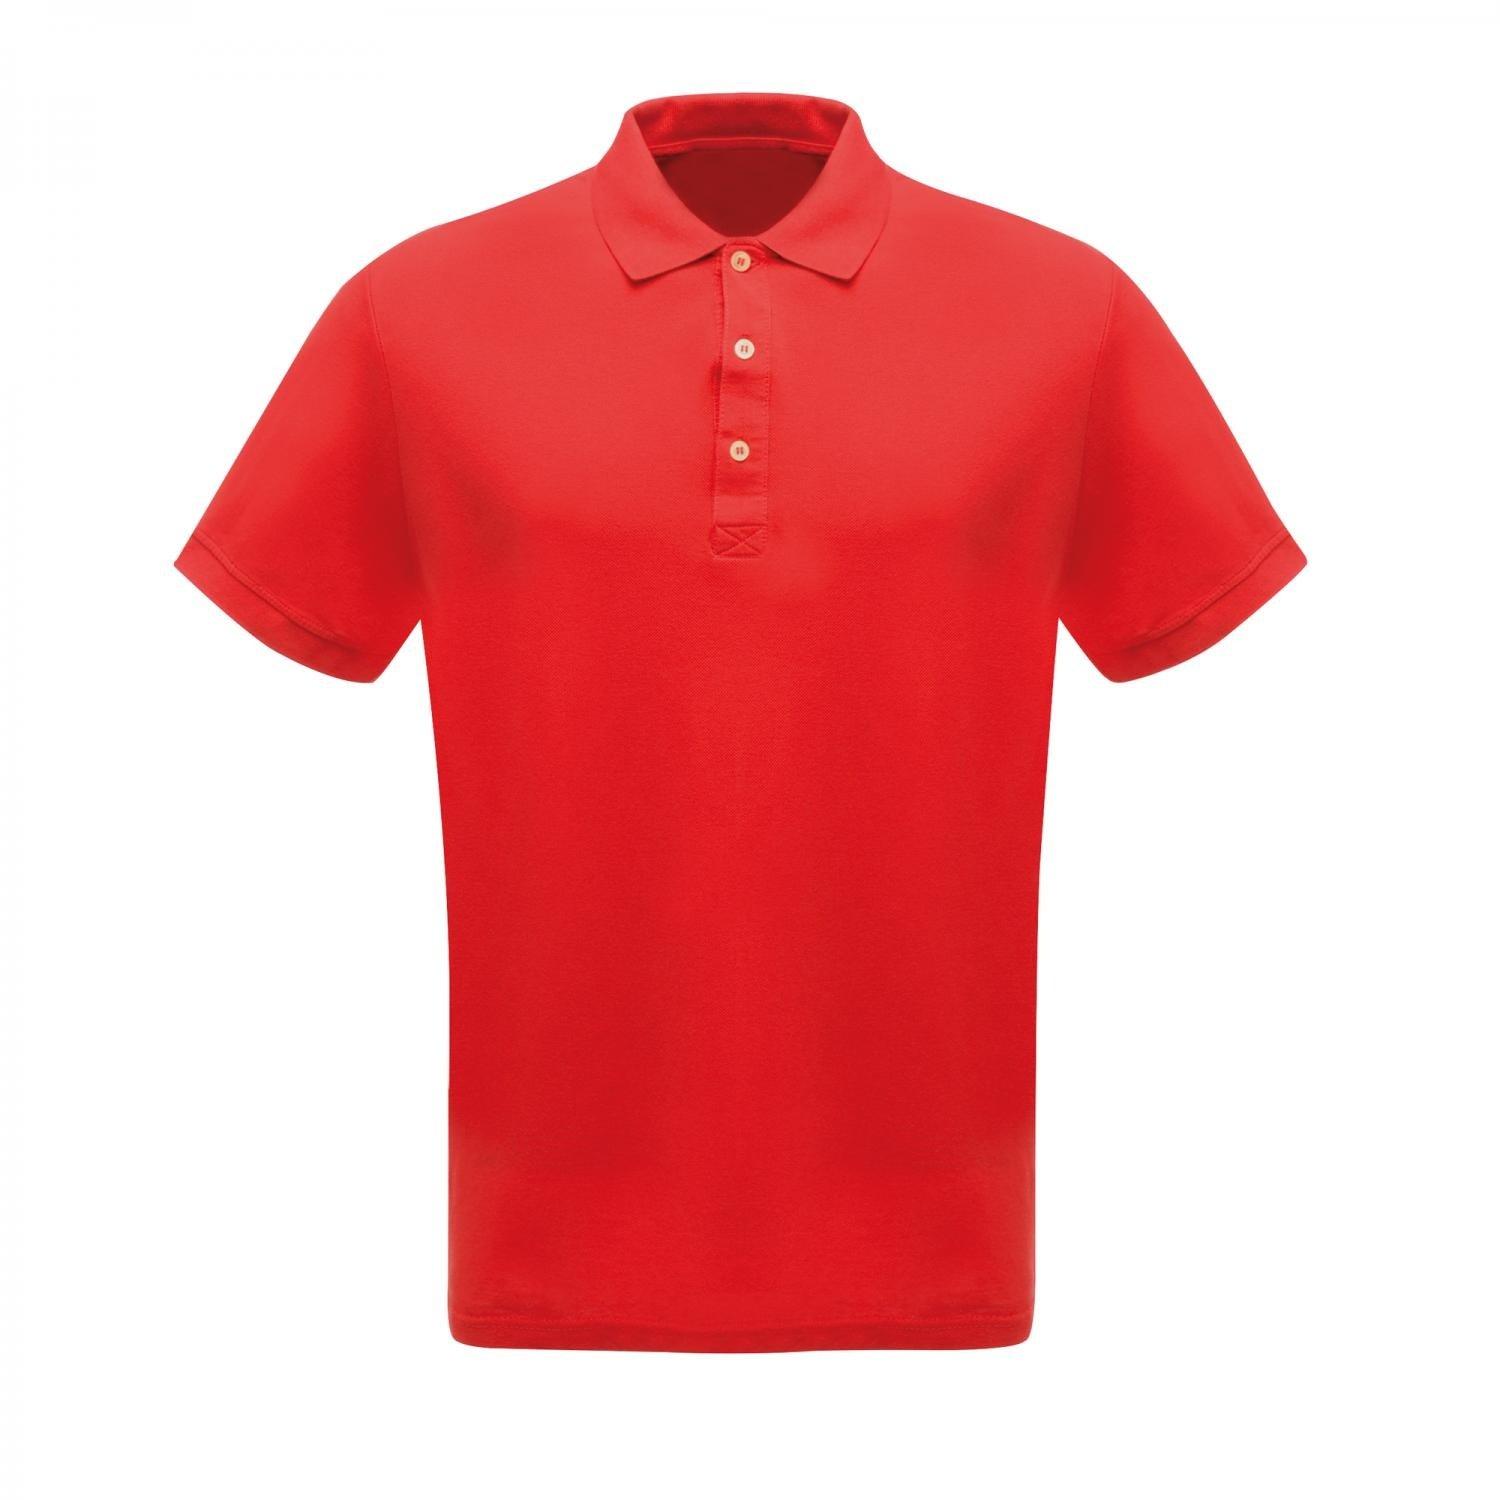 Professionell Klassik Poloshirt Herren Rot Bunt XL von Regatta